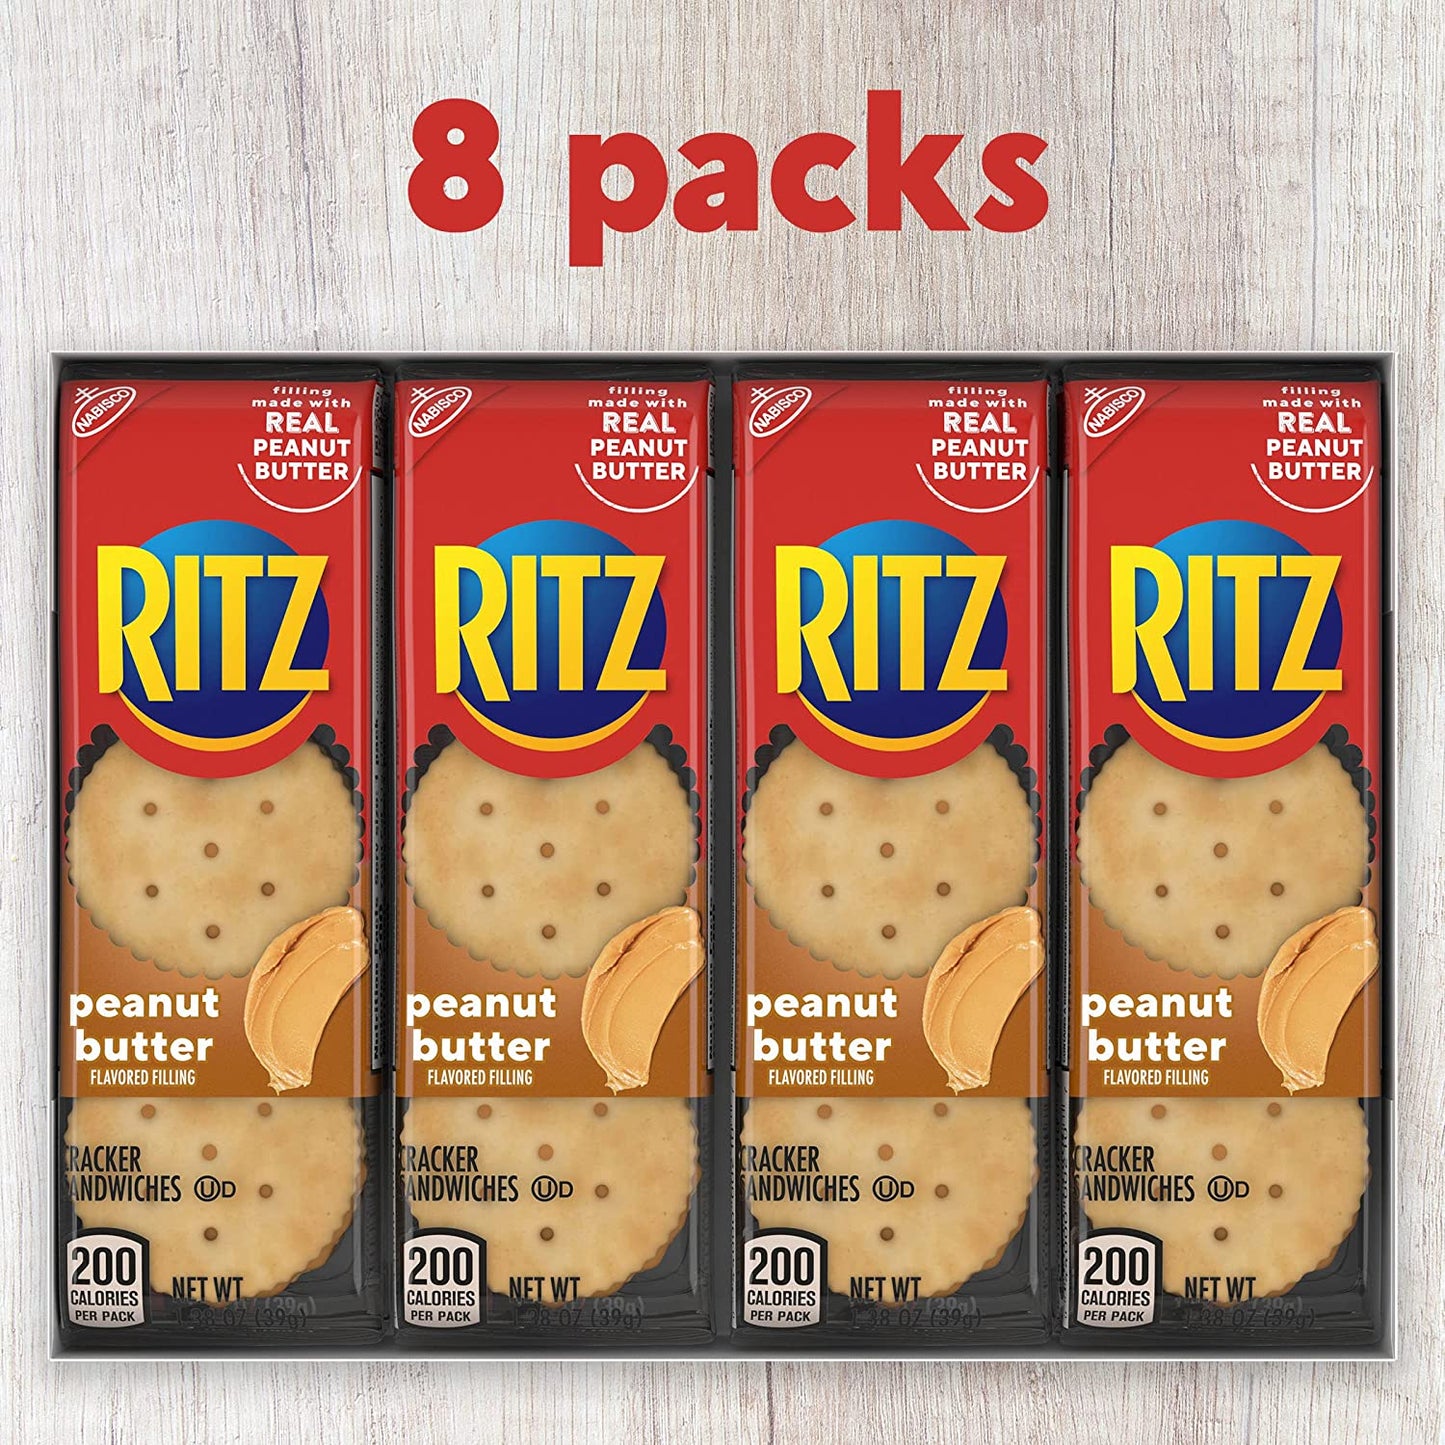 RITZ Peanut Butter Sandwich Crackers, 8 Packs - 1.38 oz each